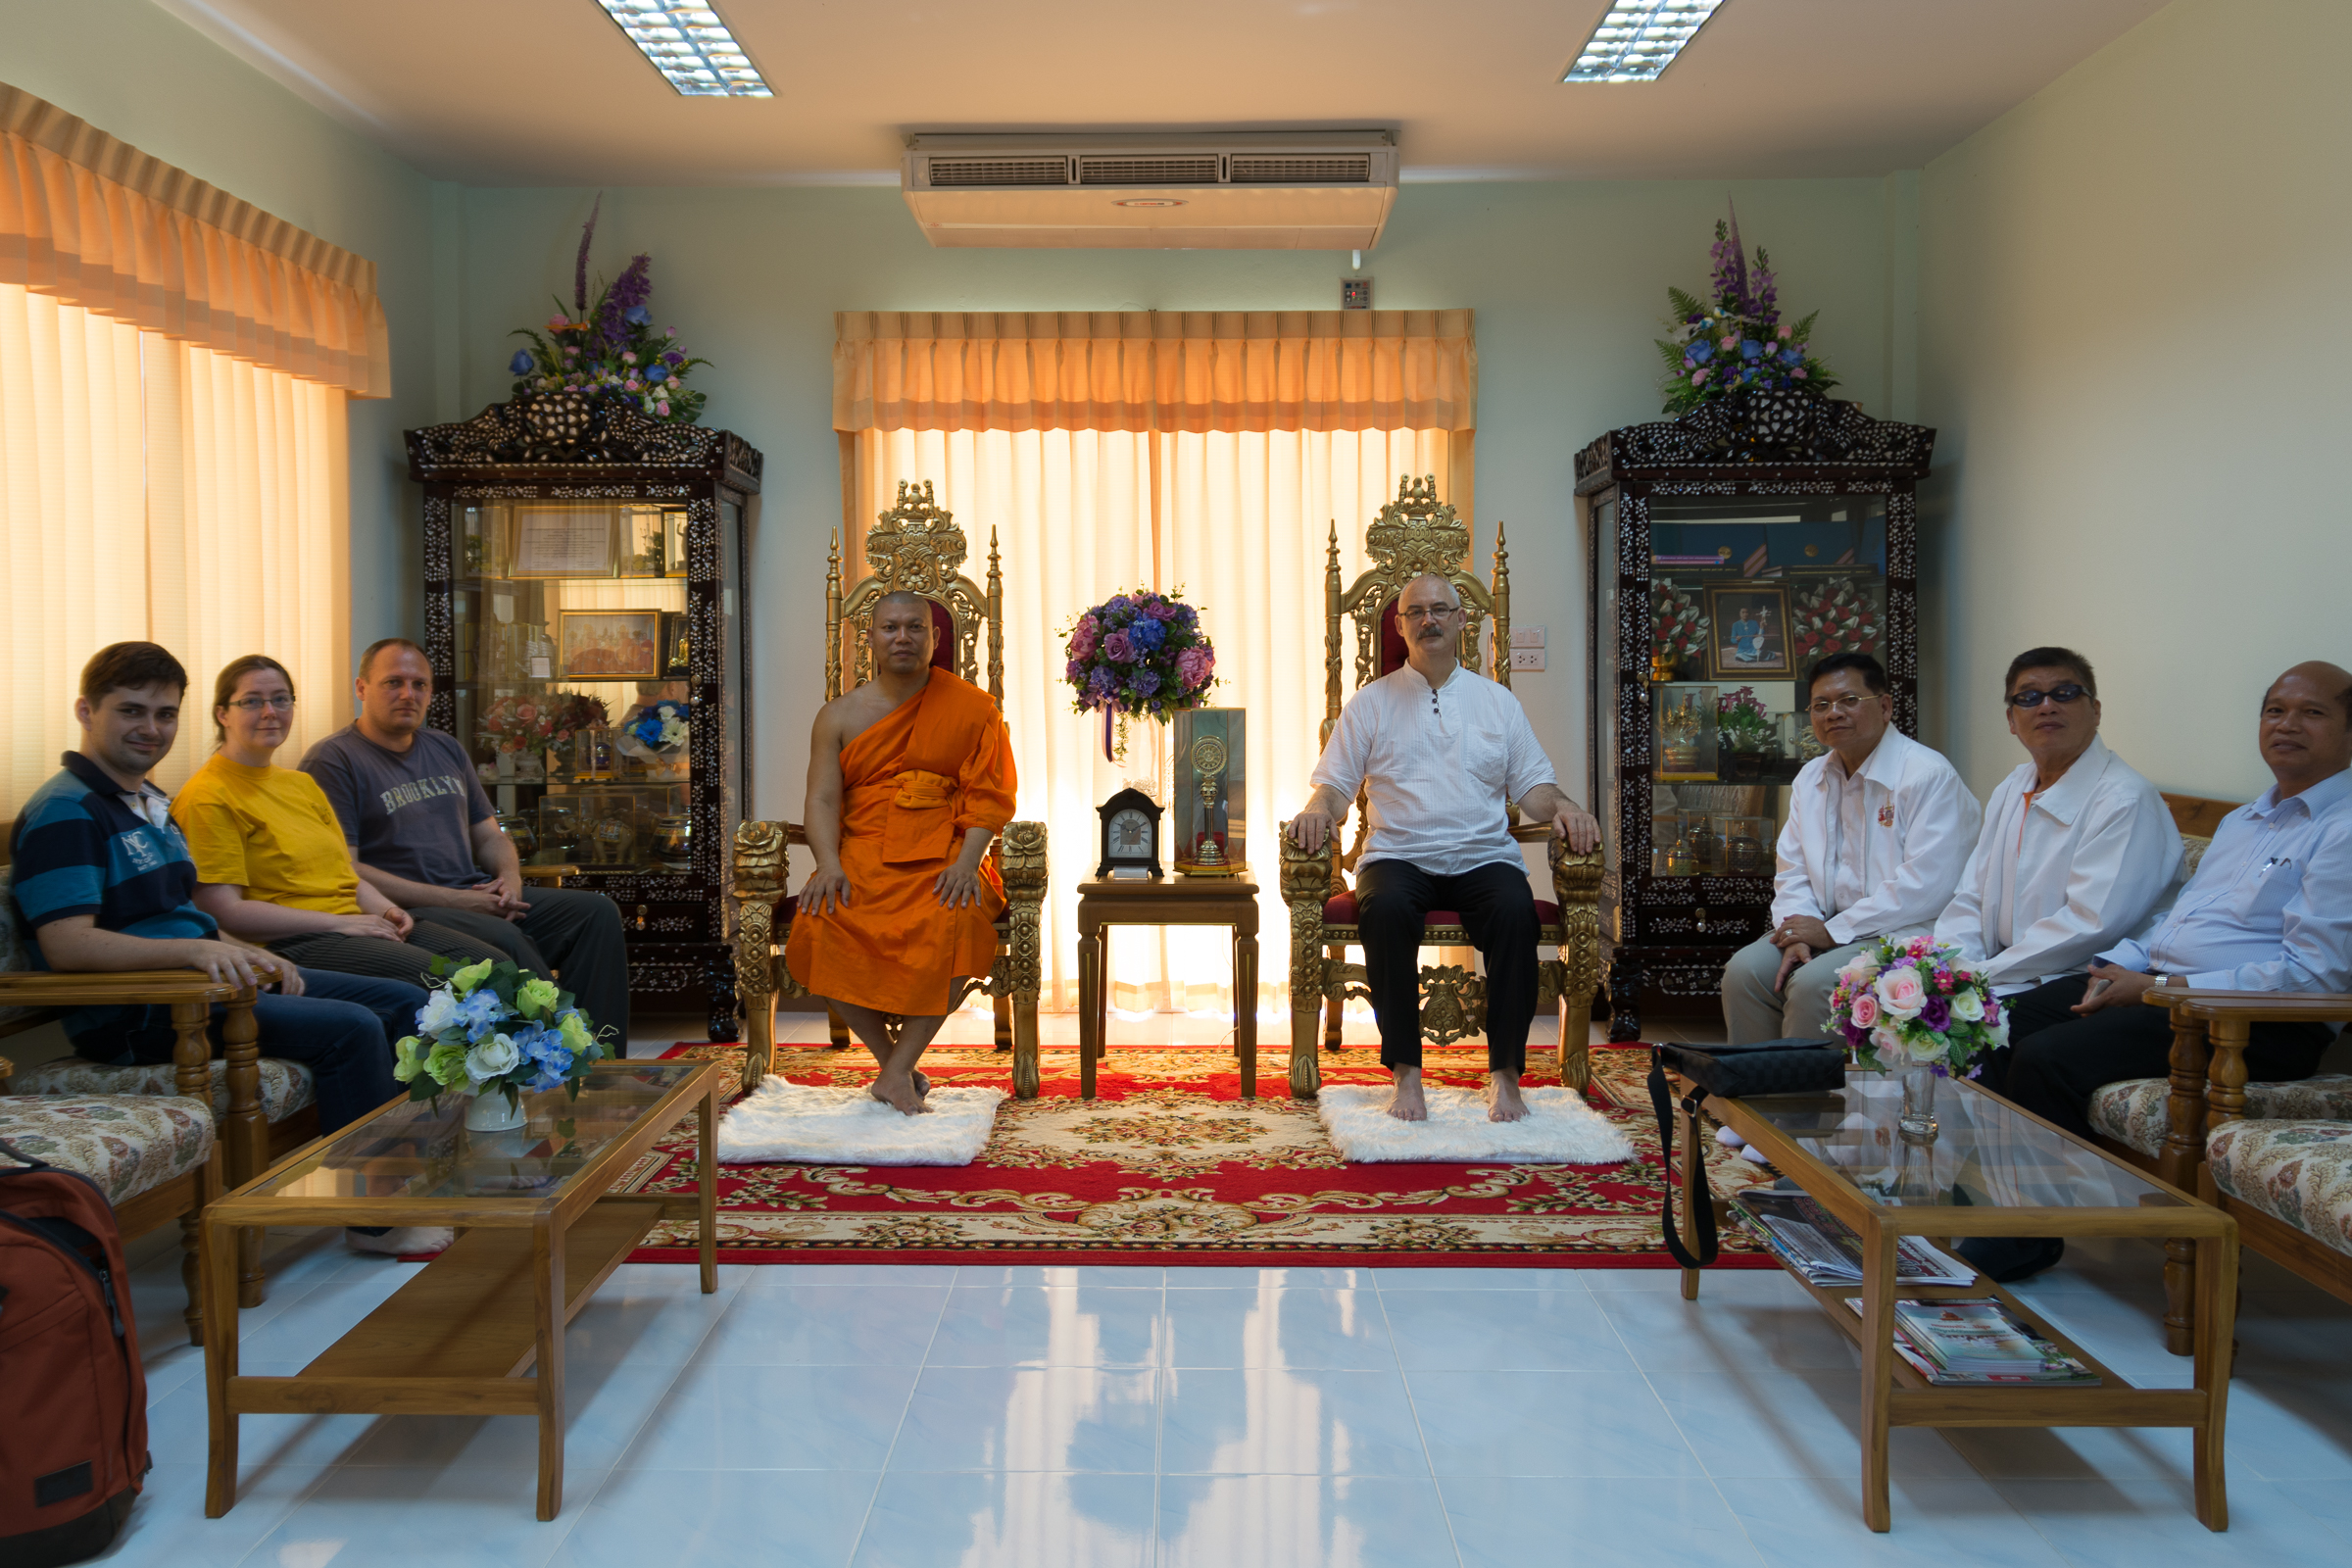 Három vezető apát, akik pár nappal korábban Budapesten voltak nálunk vendégek, meghívott minket kolostorukba, ahol meleg szívvel fogadtak bennünket.   Utána felkértek minket, hogy mutassuk be a Főiskolát a thaiföldi egyetemi partnerünk diákjainak egy előadás keretében.